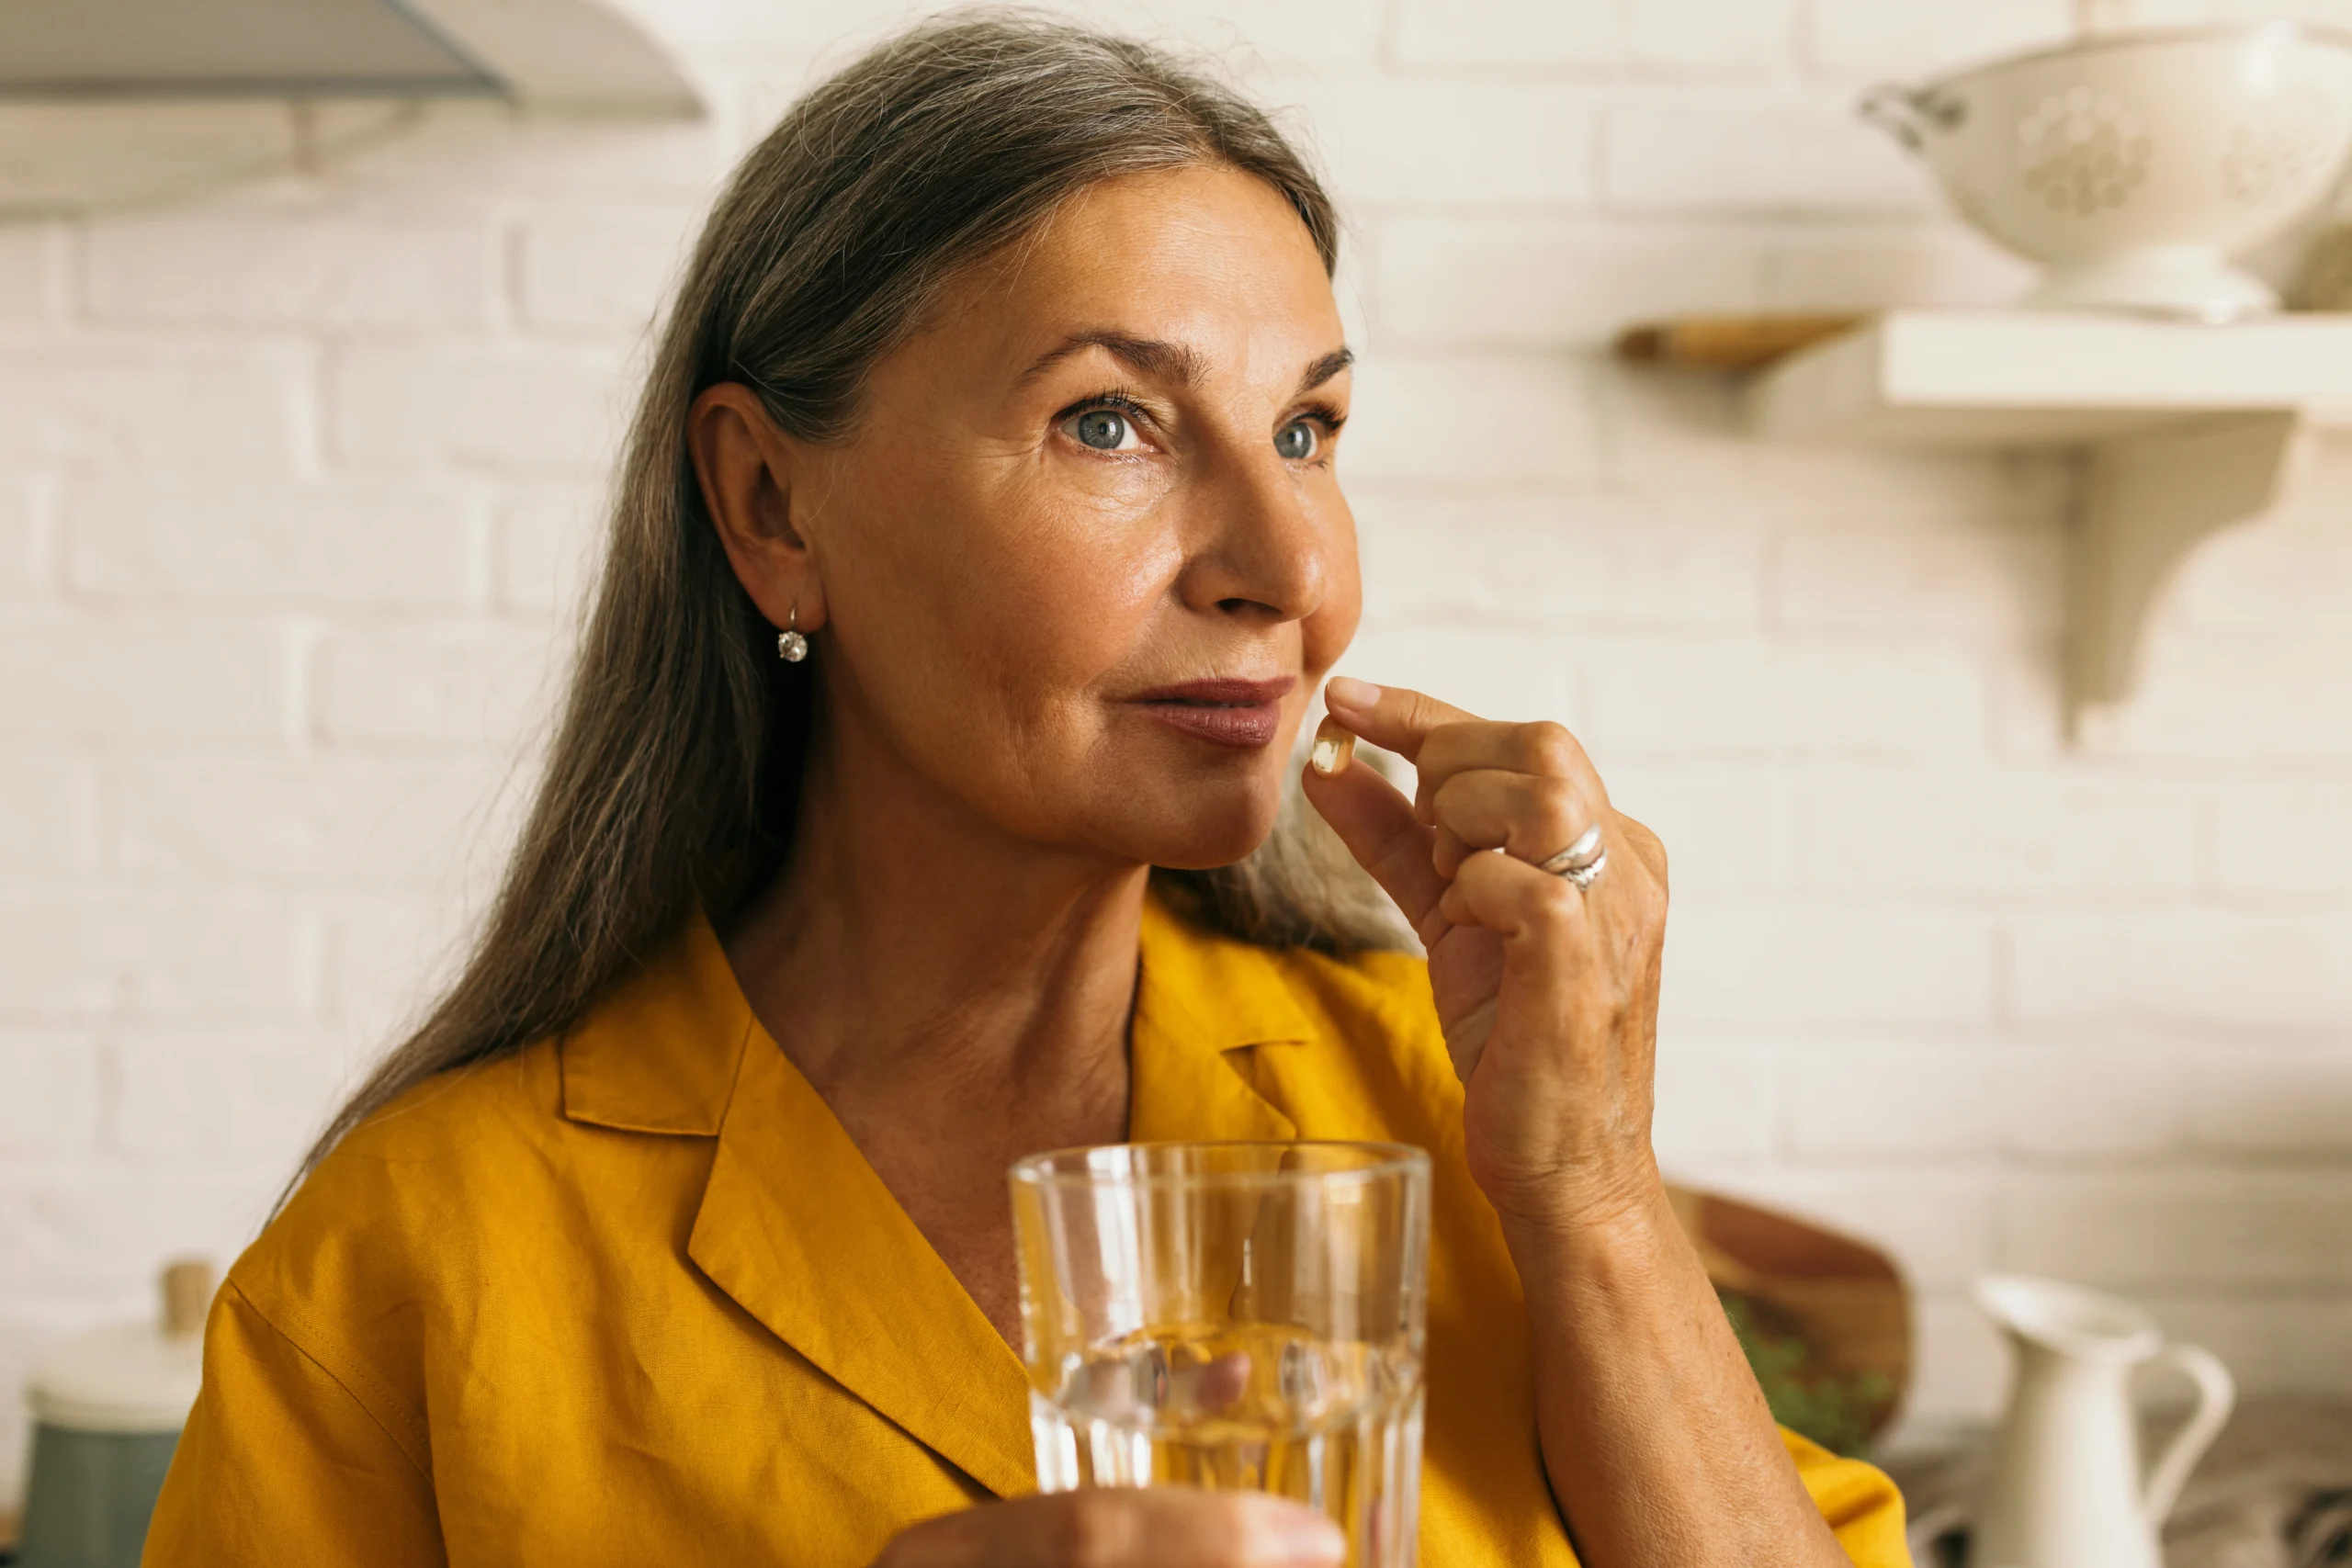 Probiotyki dla seniorów – kiedy warto je stosować? Seniorka w żółtej bluzce przyjmuje lek/suplement/preparat probiotyczny.